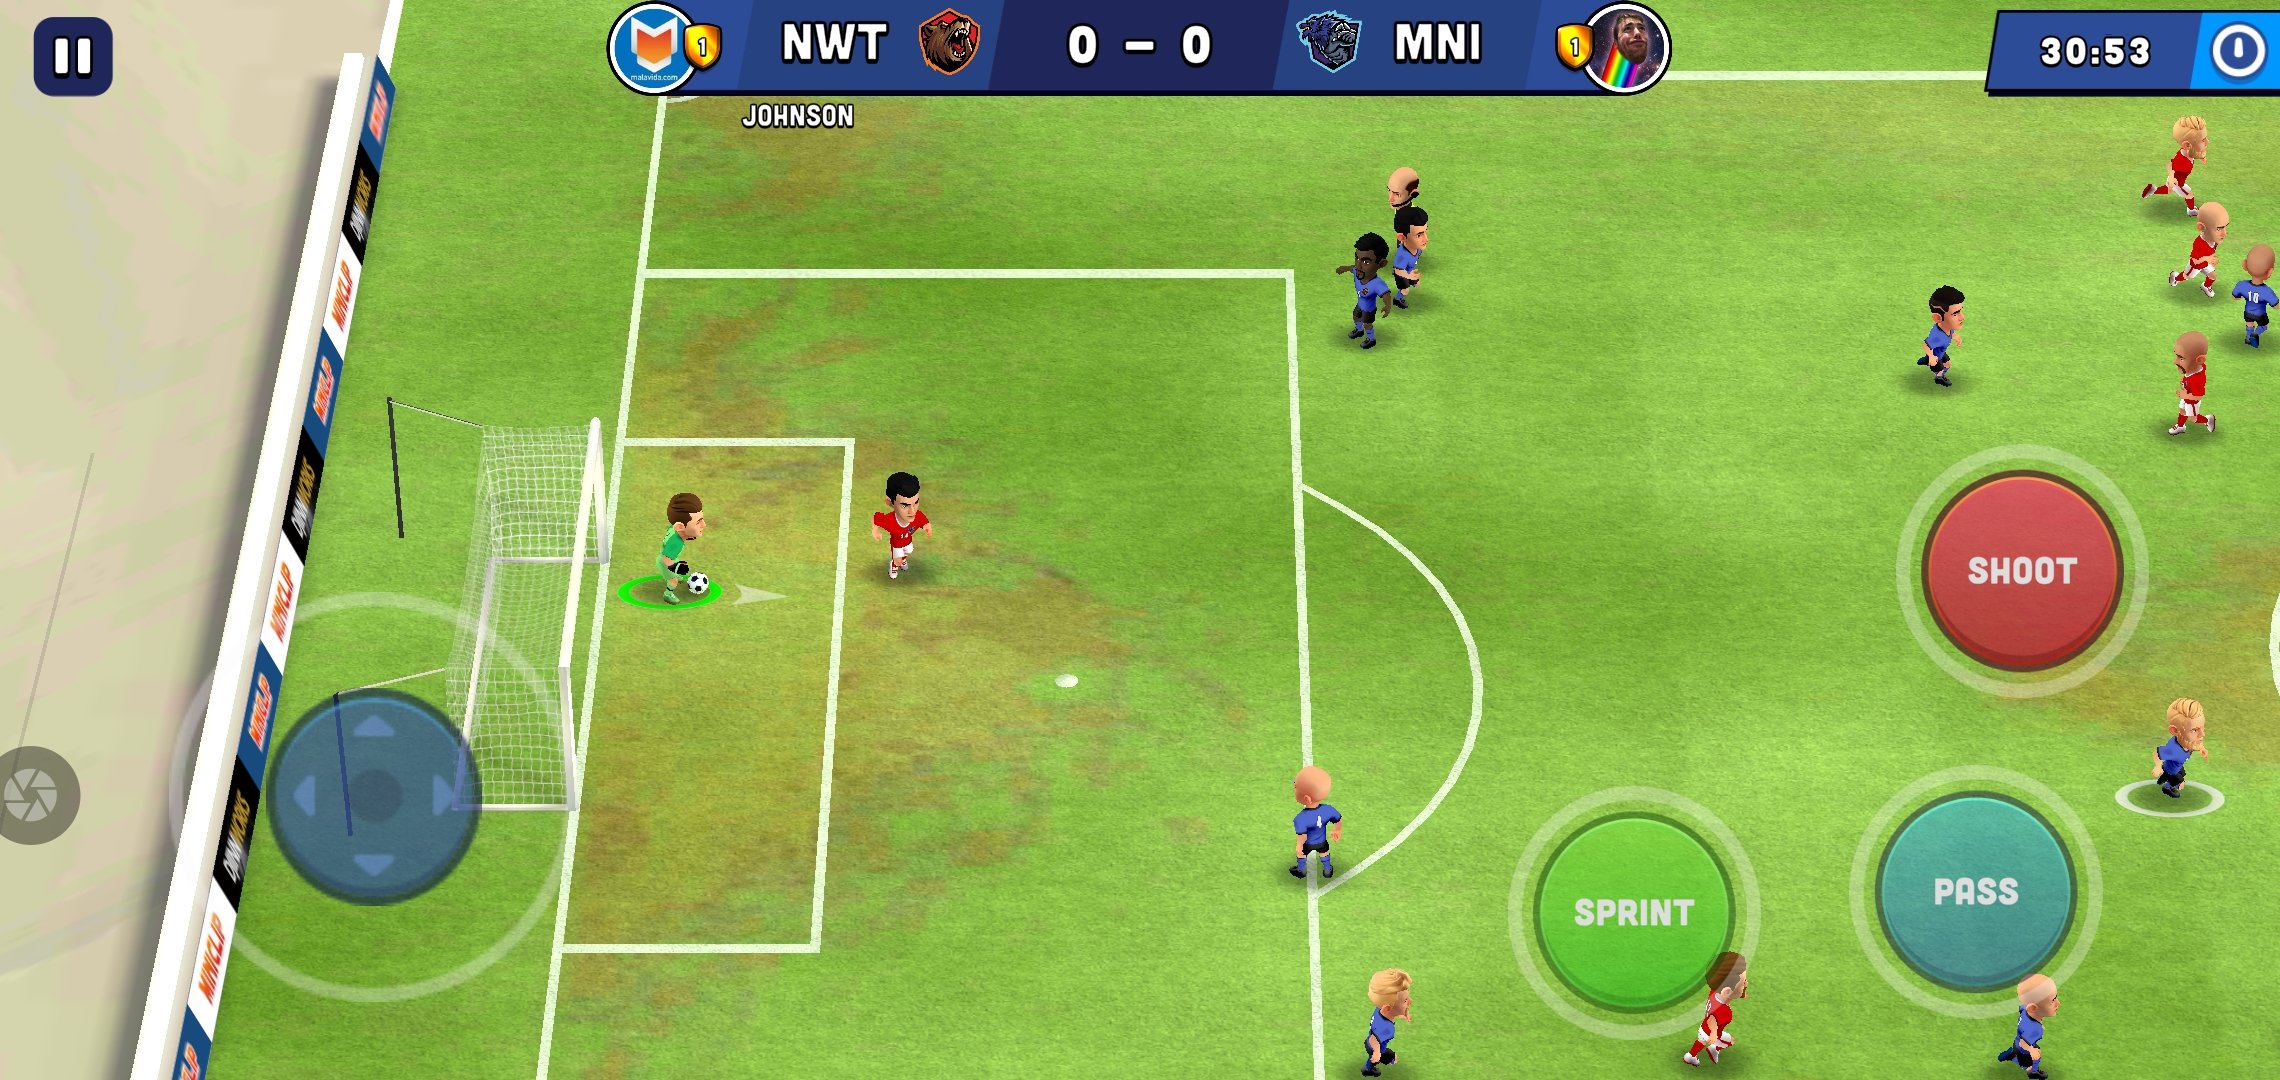 jogar futebol - Download do APK para Android